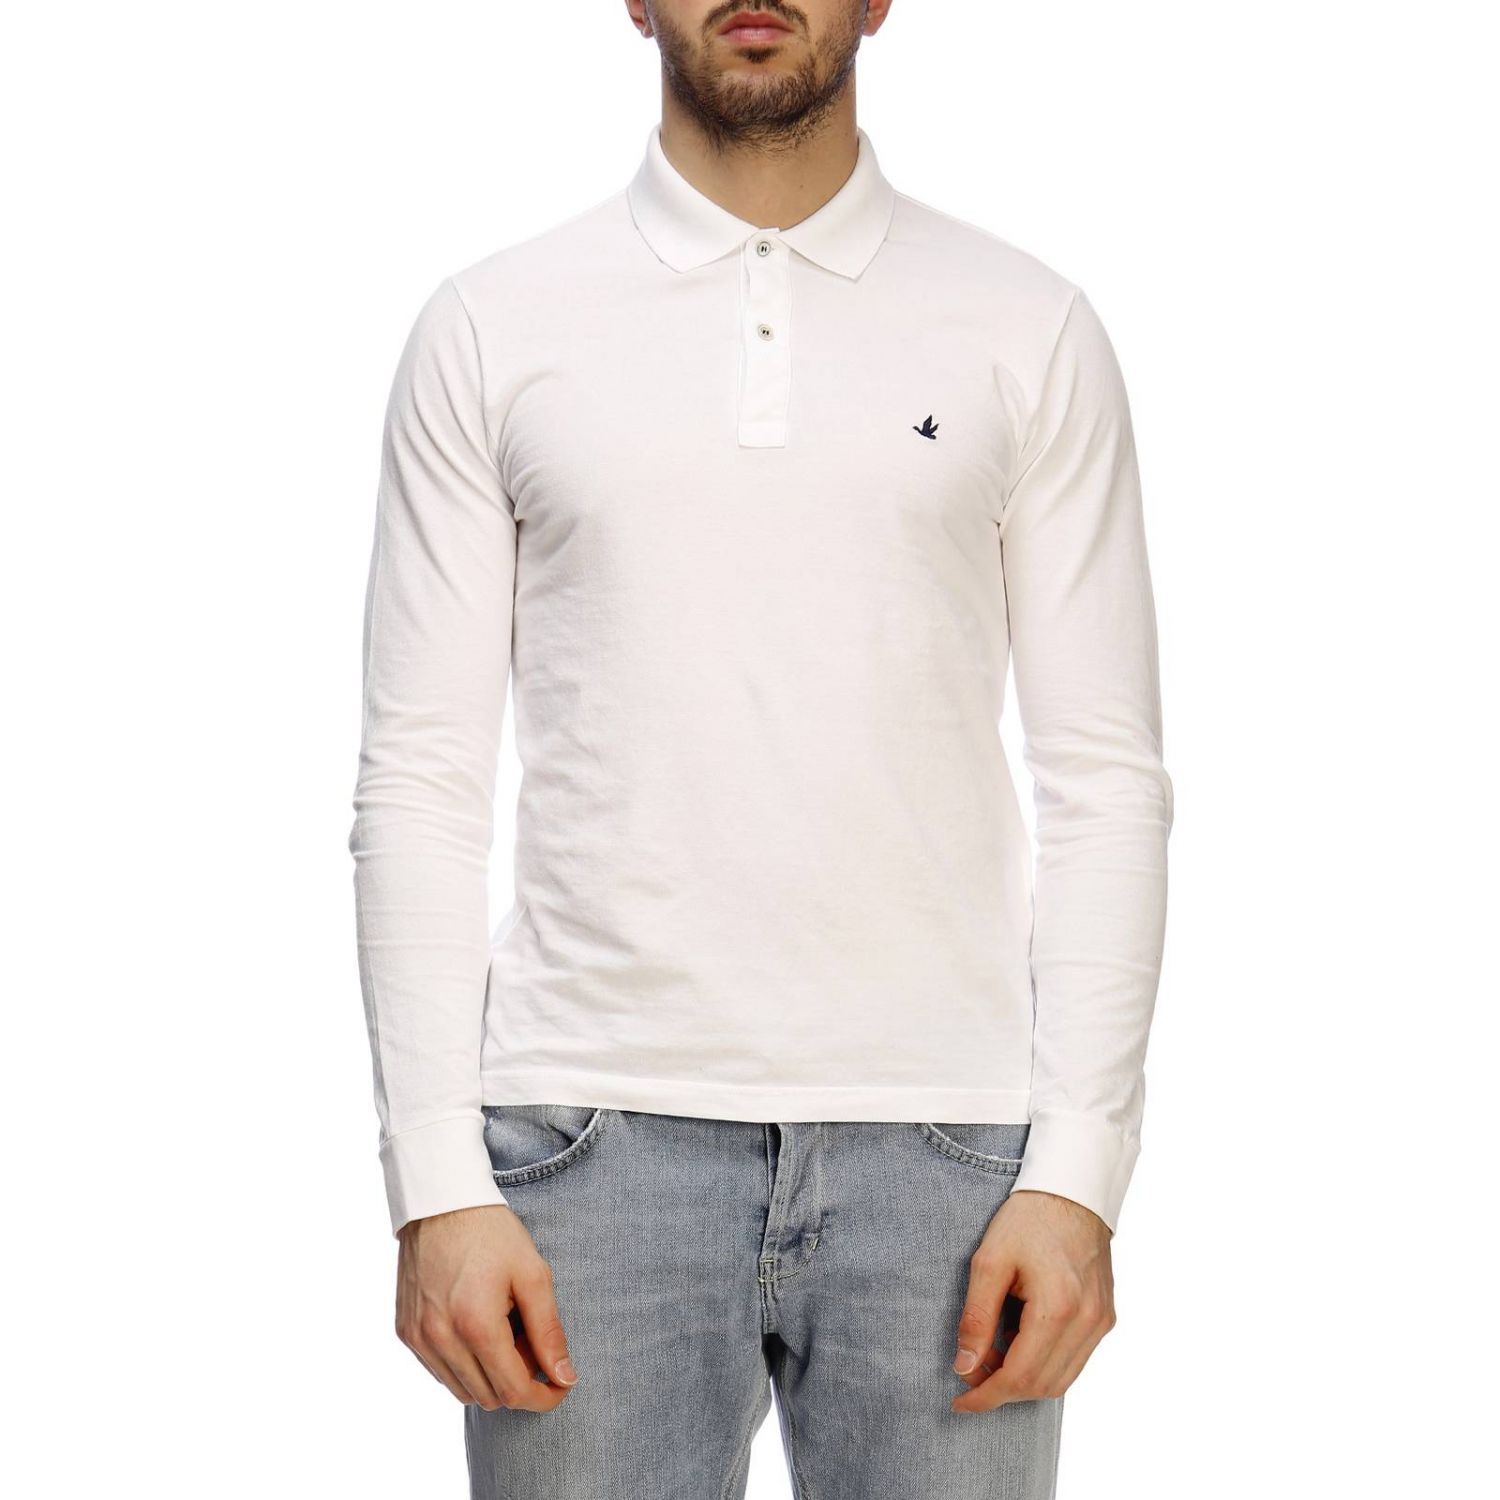 Brooksfield Outlet: T-shirt men | T-Shirt Brooksfield Men White | T ...